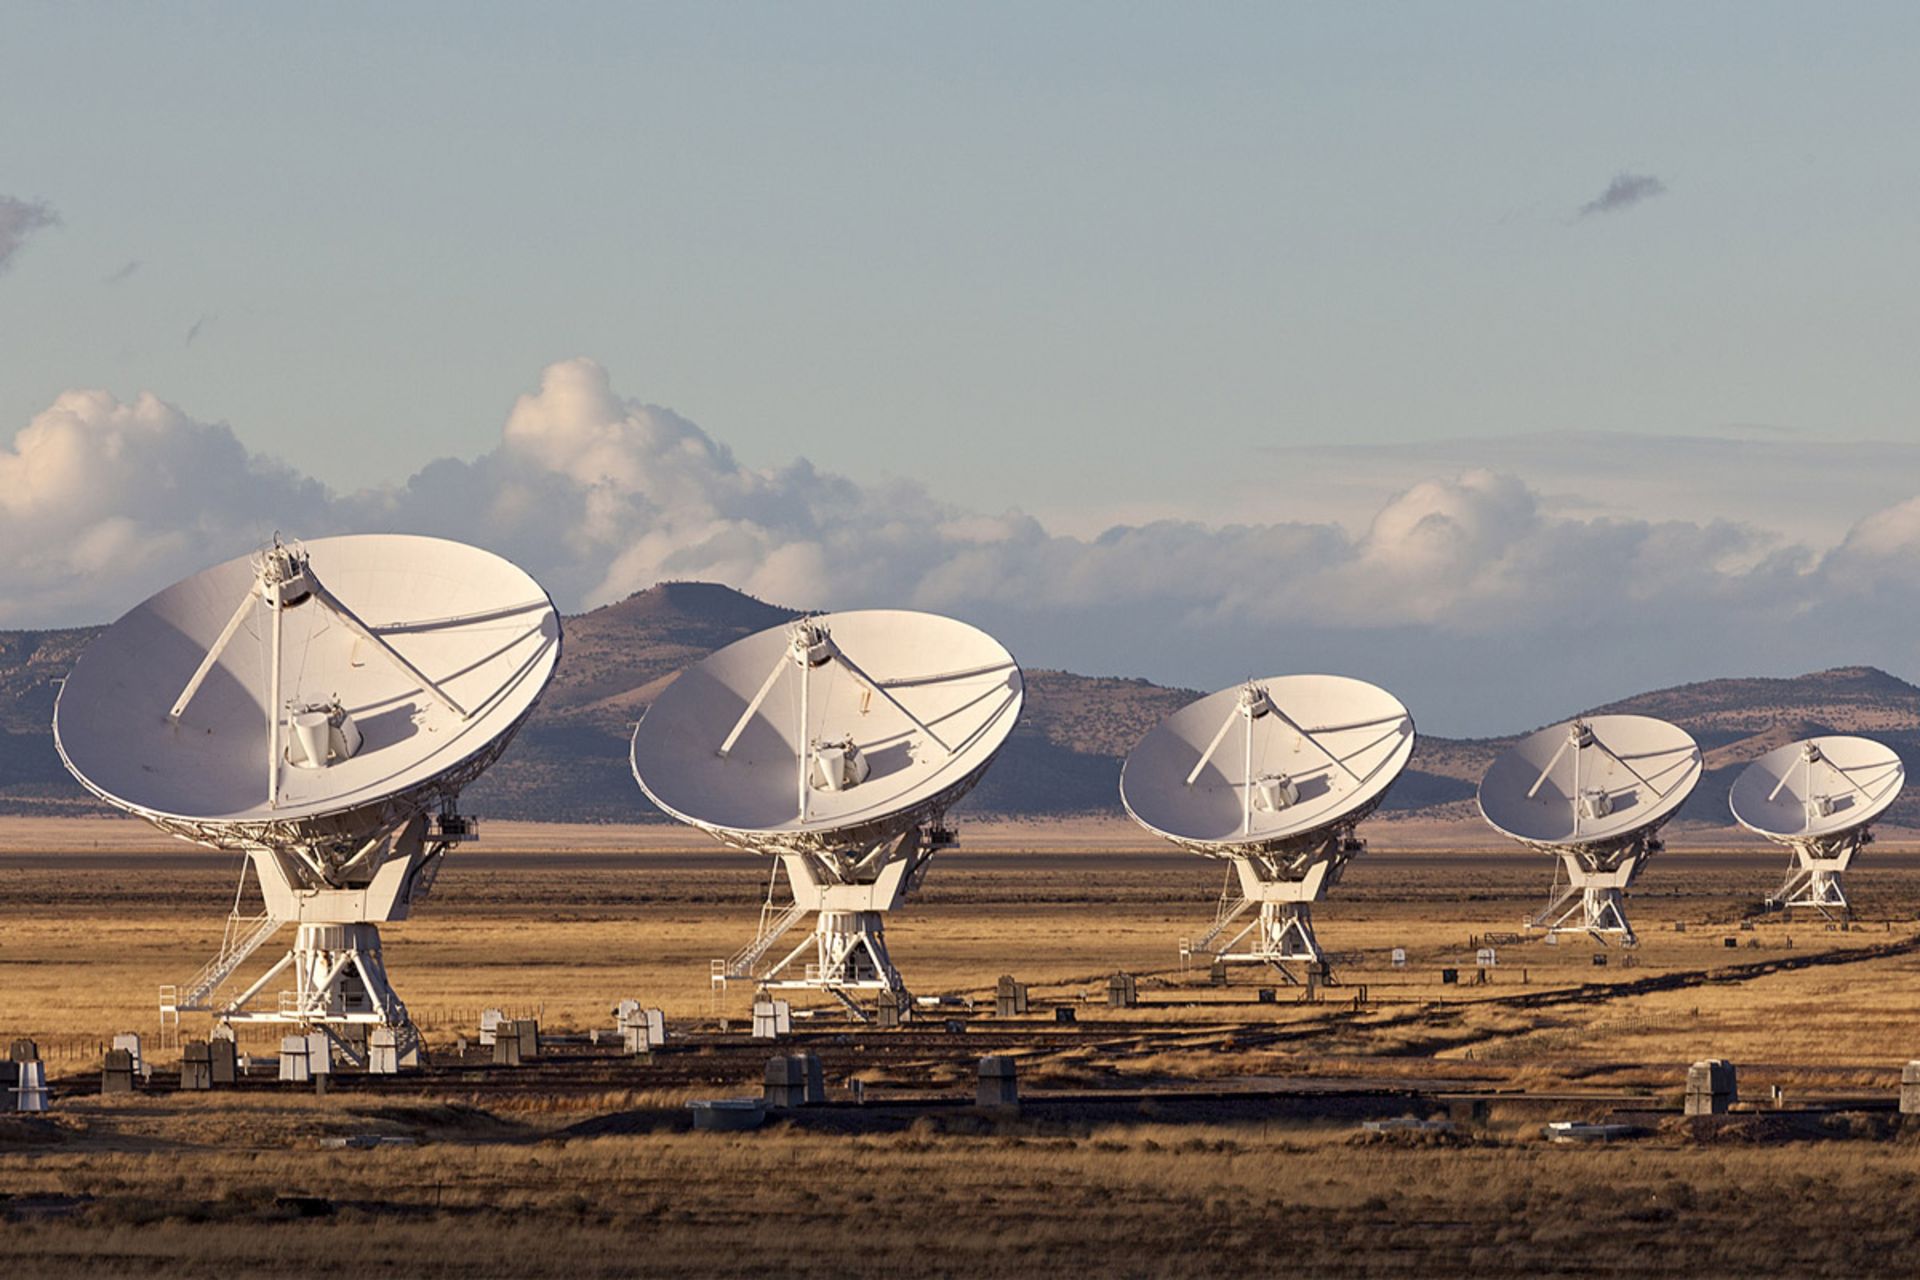 دیش های تلسکوپ های رادیویی VLT در بیابان